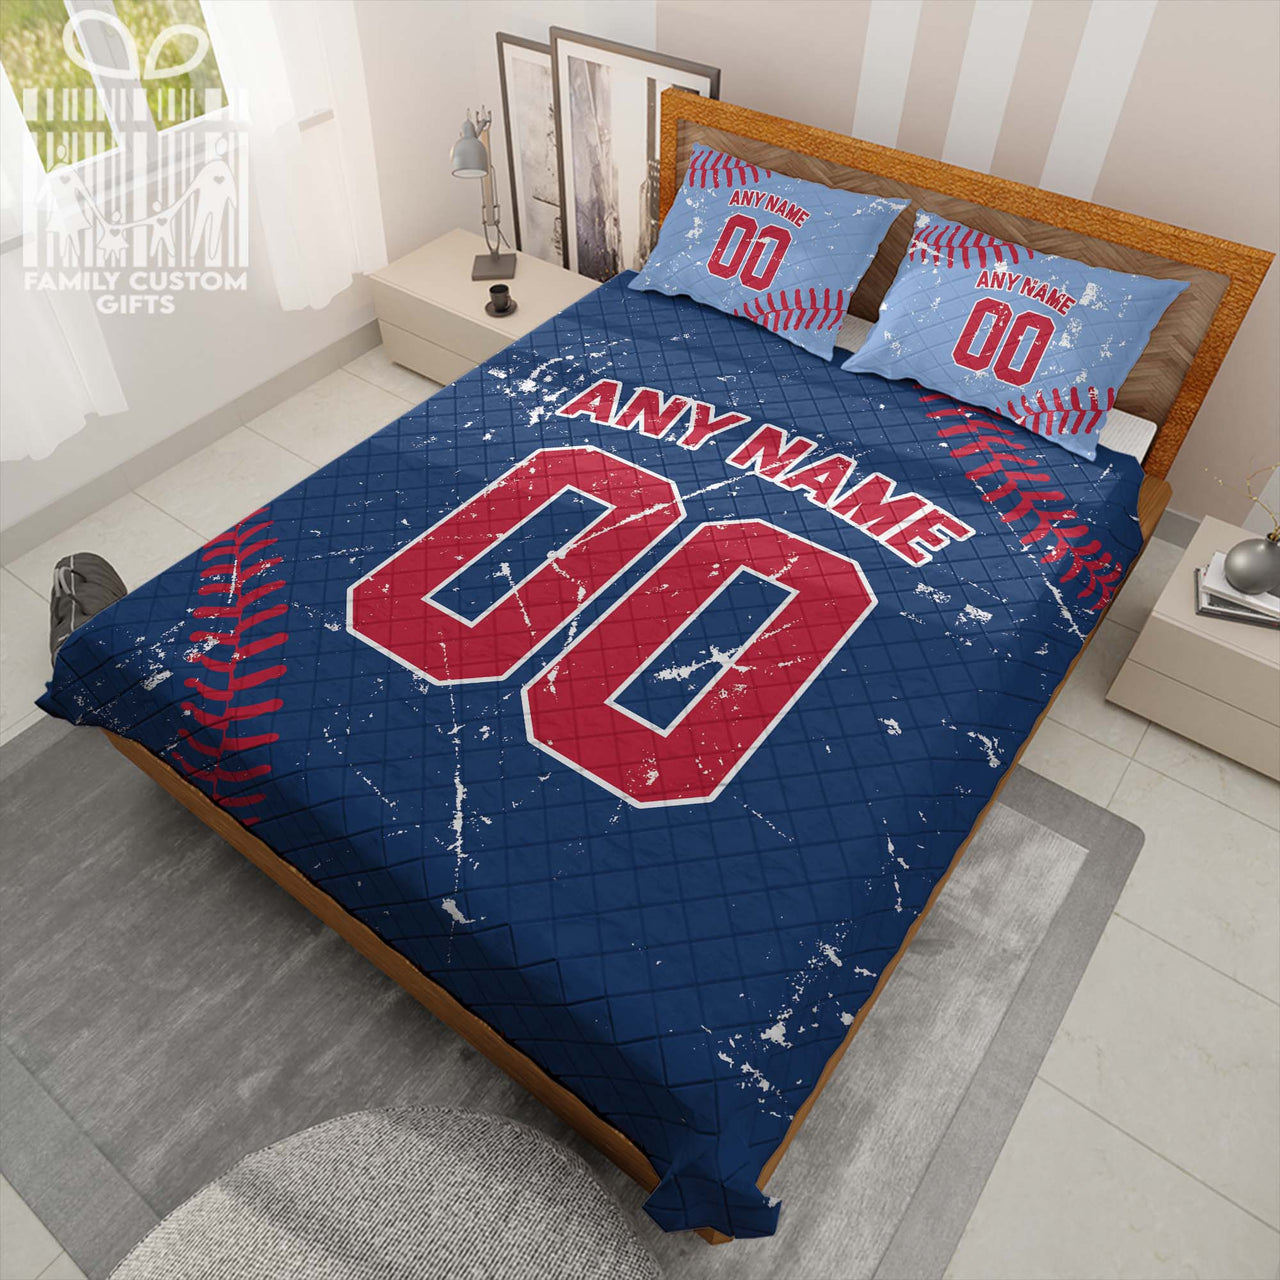 Custom Quilt Sets Philadelphia Jersey Personalized Baseball Premium Quilt Bedding for Men Women